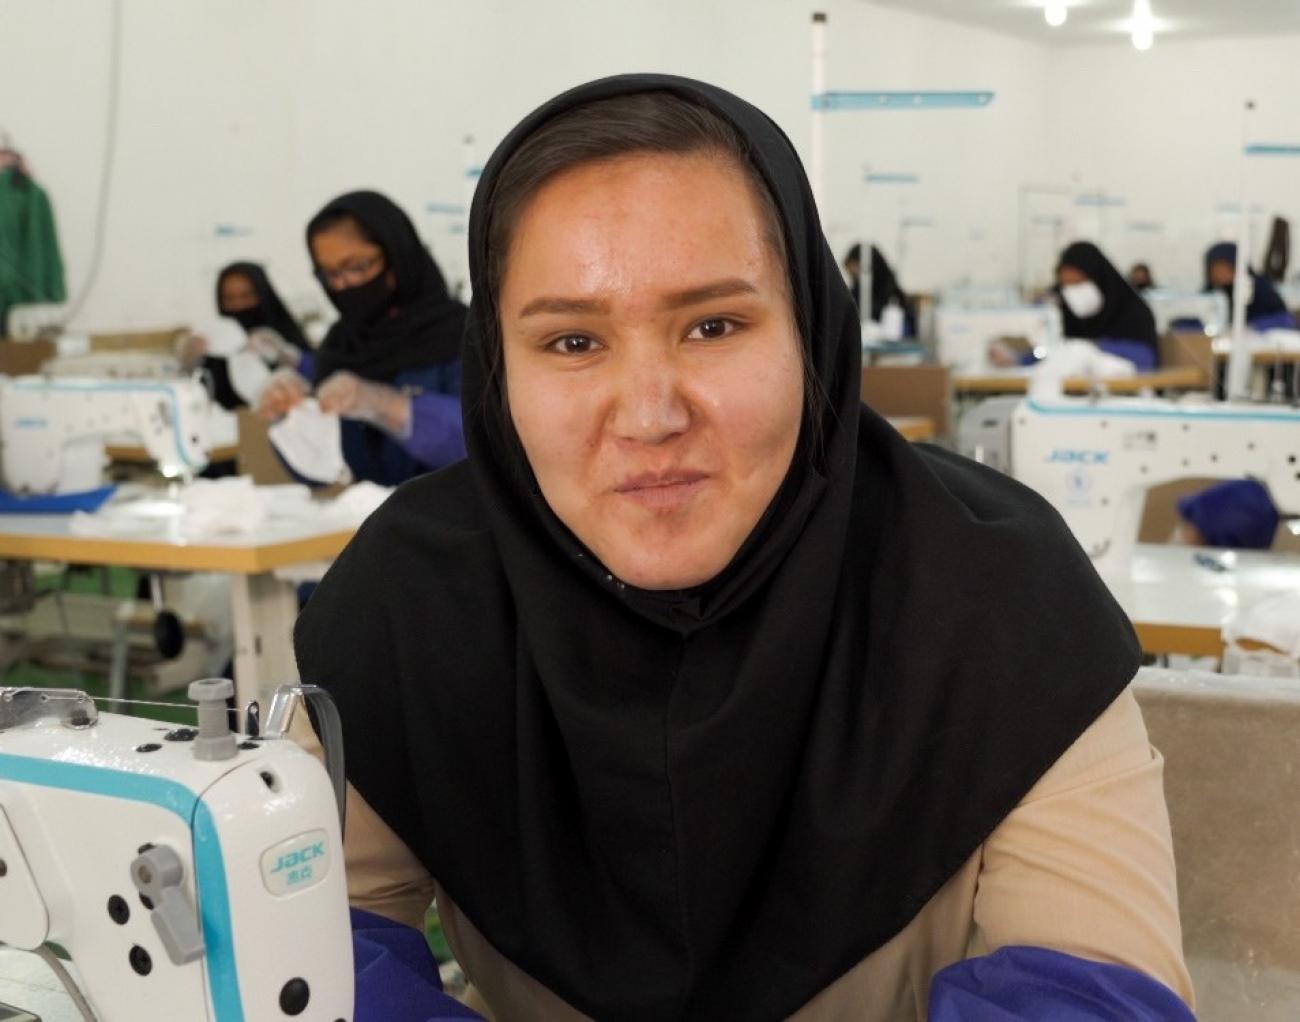 Una mujer joven mira directamente a la cámara en una sala llena de mujeres que trabajan con máquinas de coser.